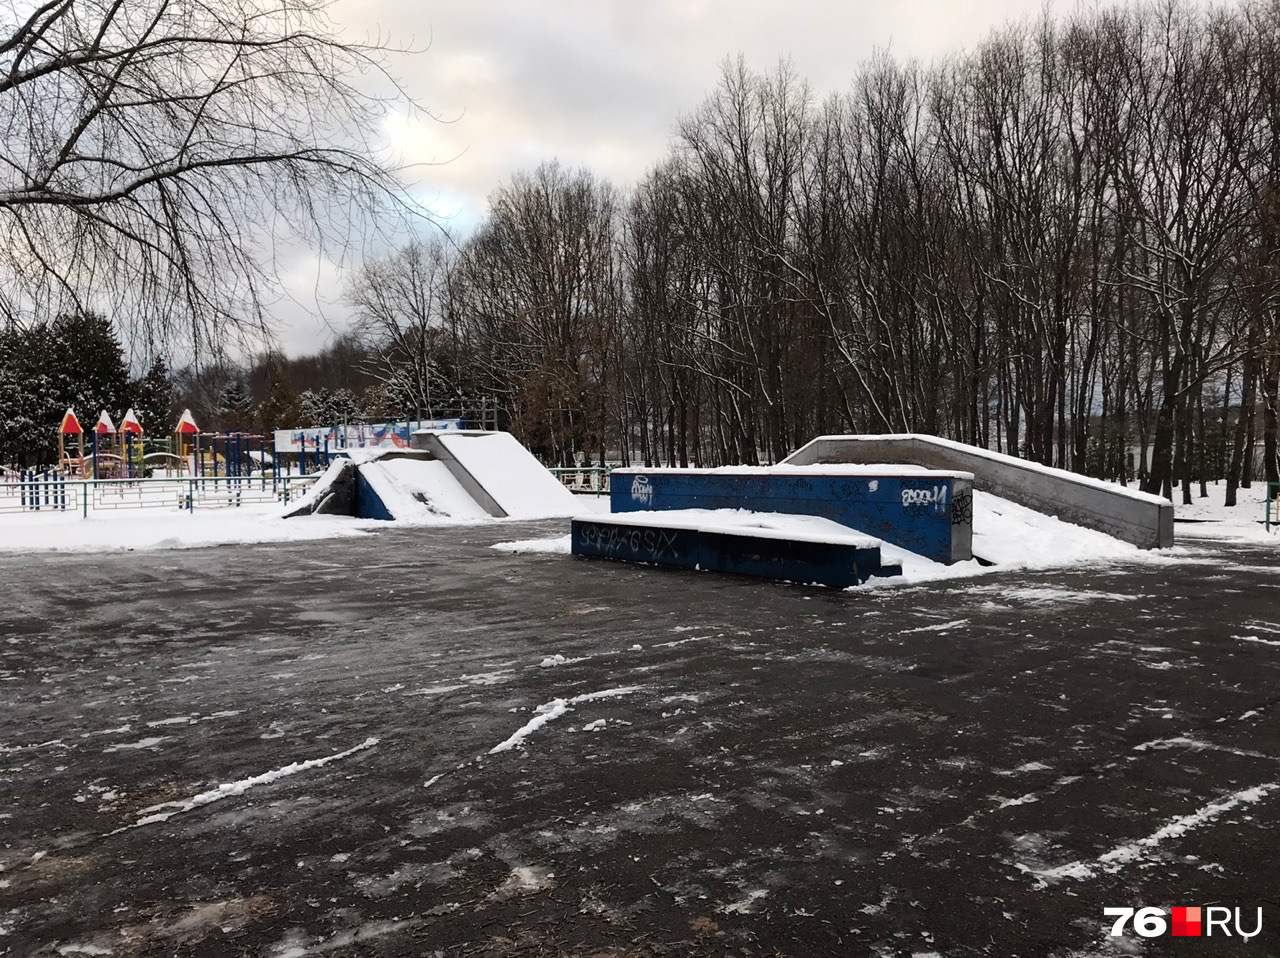 В другом районе Рыбинска уже есть скейт-площадка. Но она не такая крутая и закрыта на ремонт